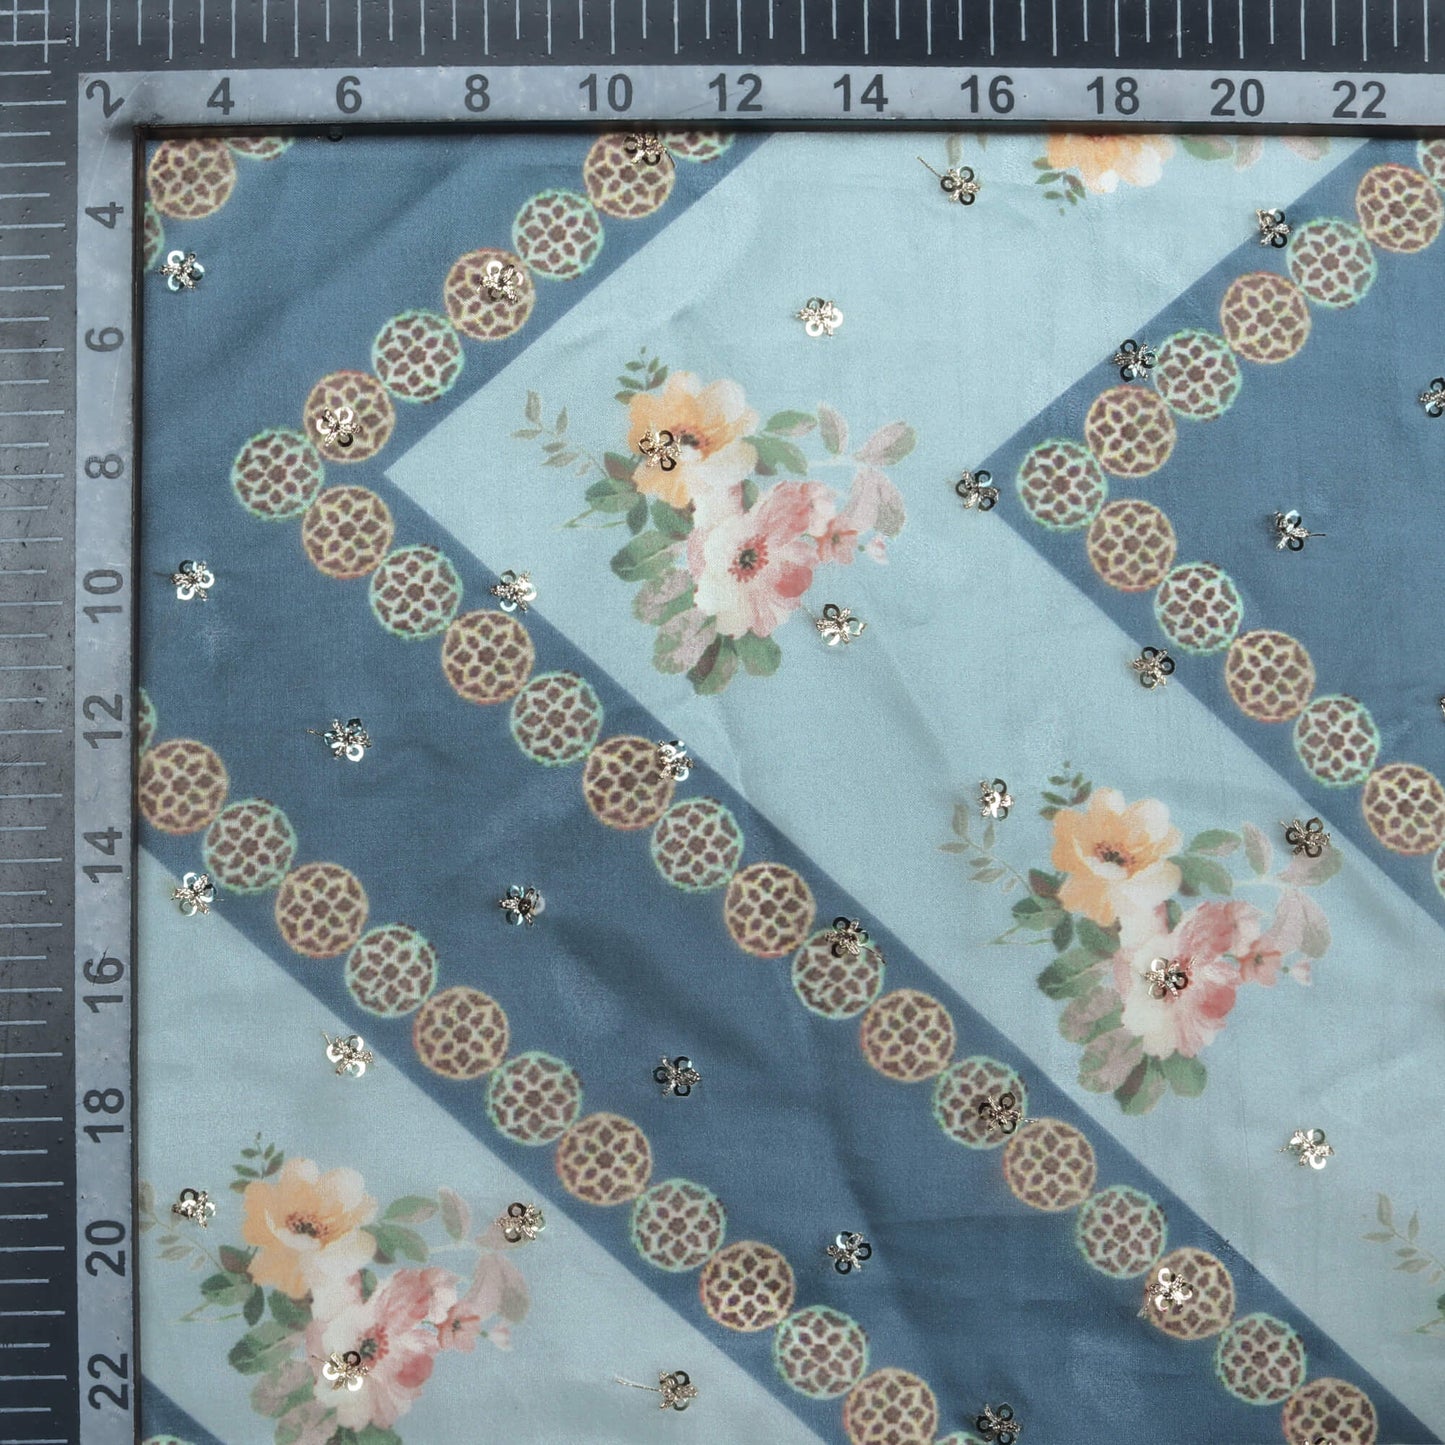 Teal Blue And Peach Floral Pattern Digital Print Booti Sequins Premium Liquid Organza Fabric